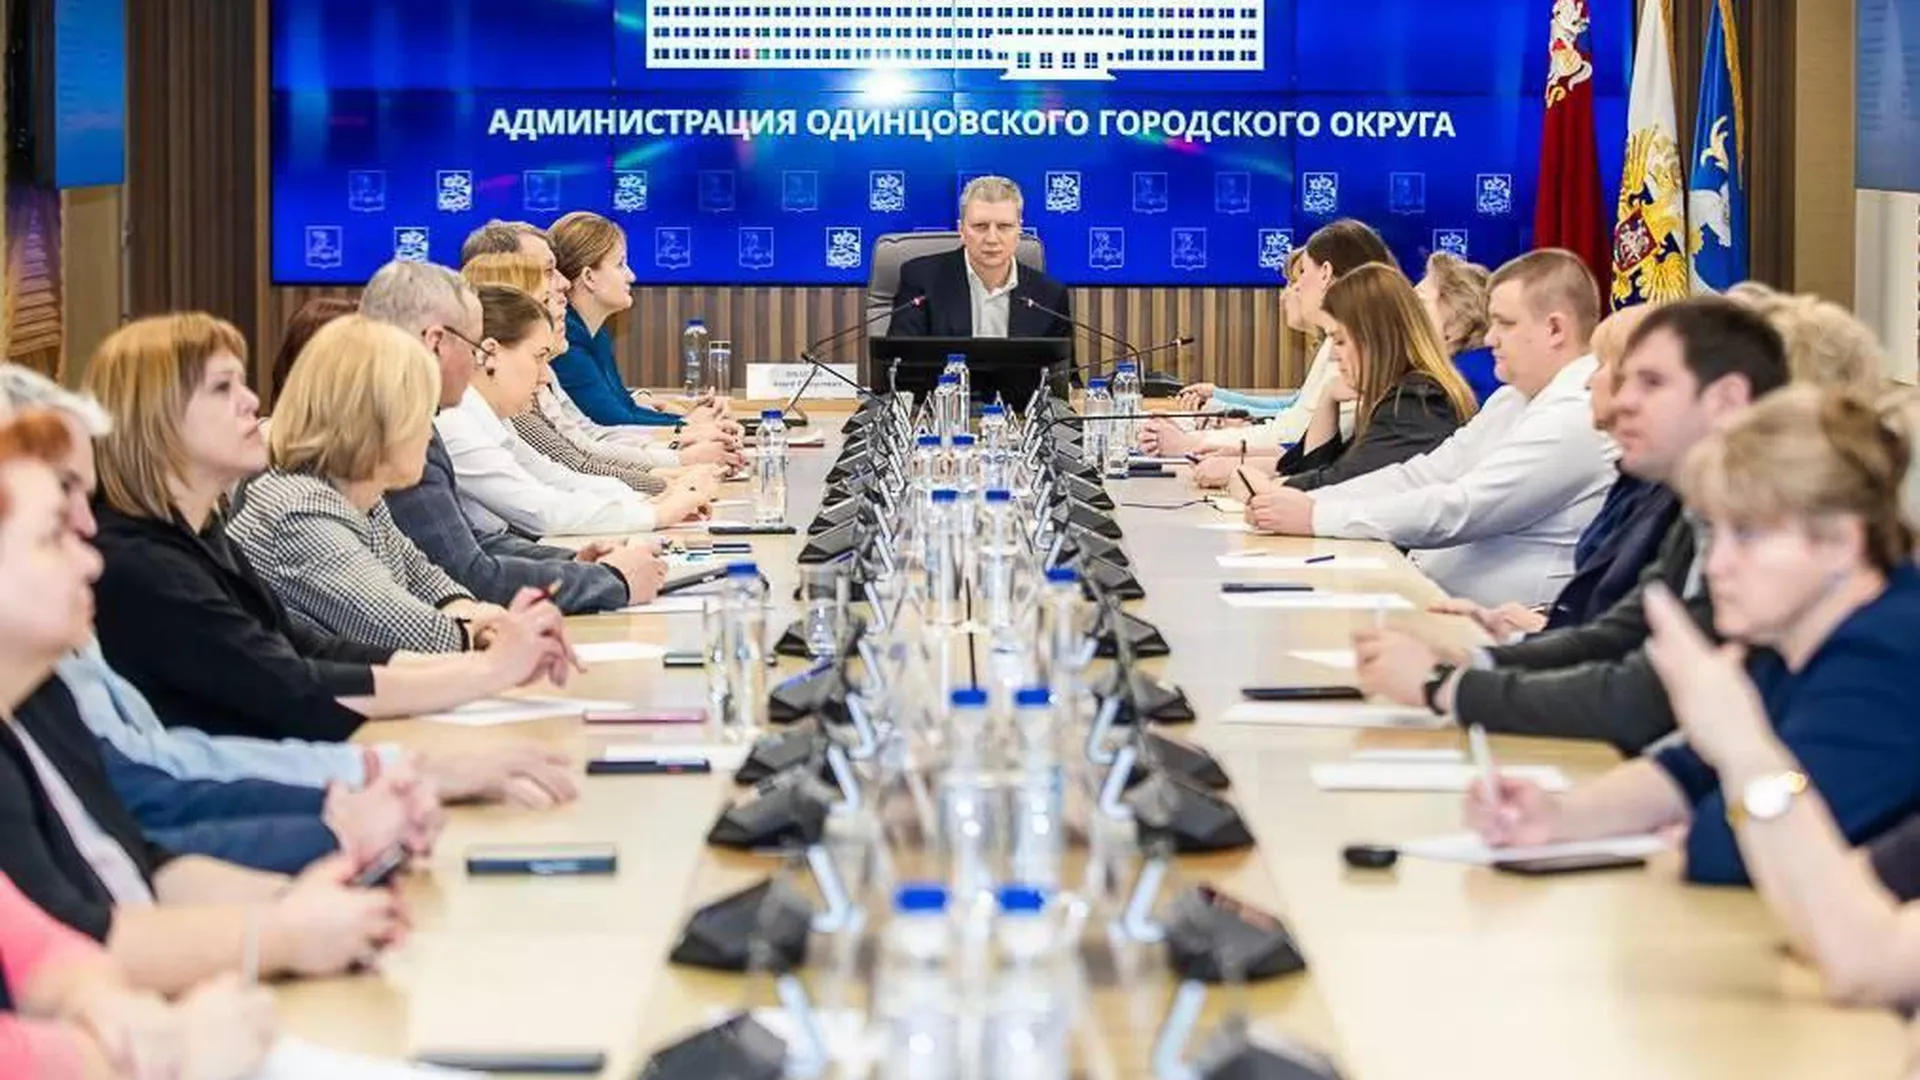 Глава Одинцова обсудил с директорами школ поддержку учителей и привлечение новых кадров